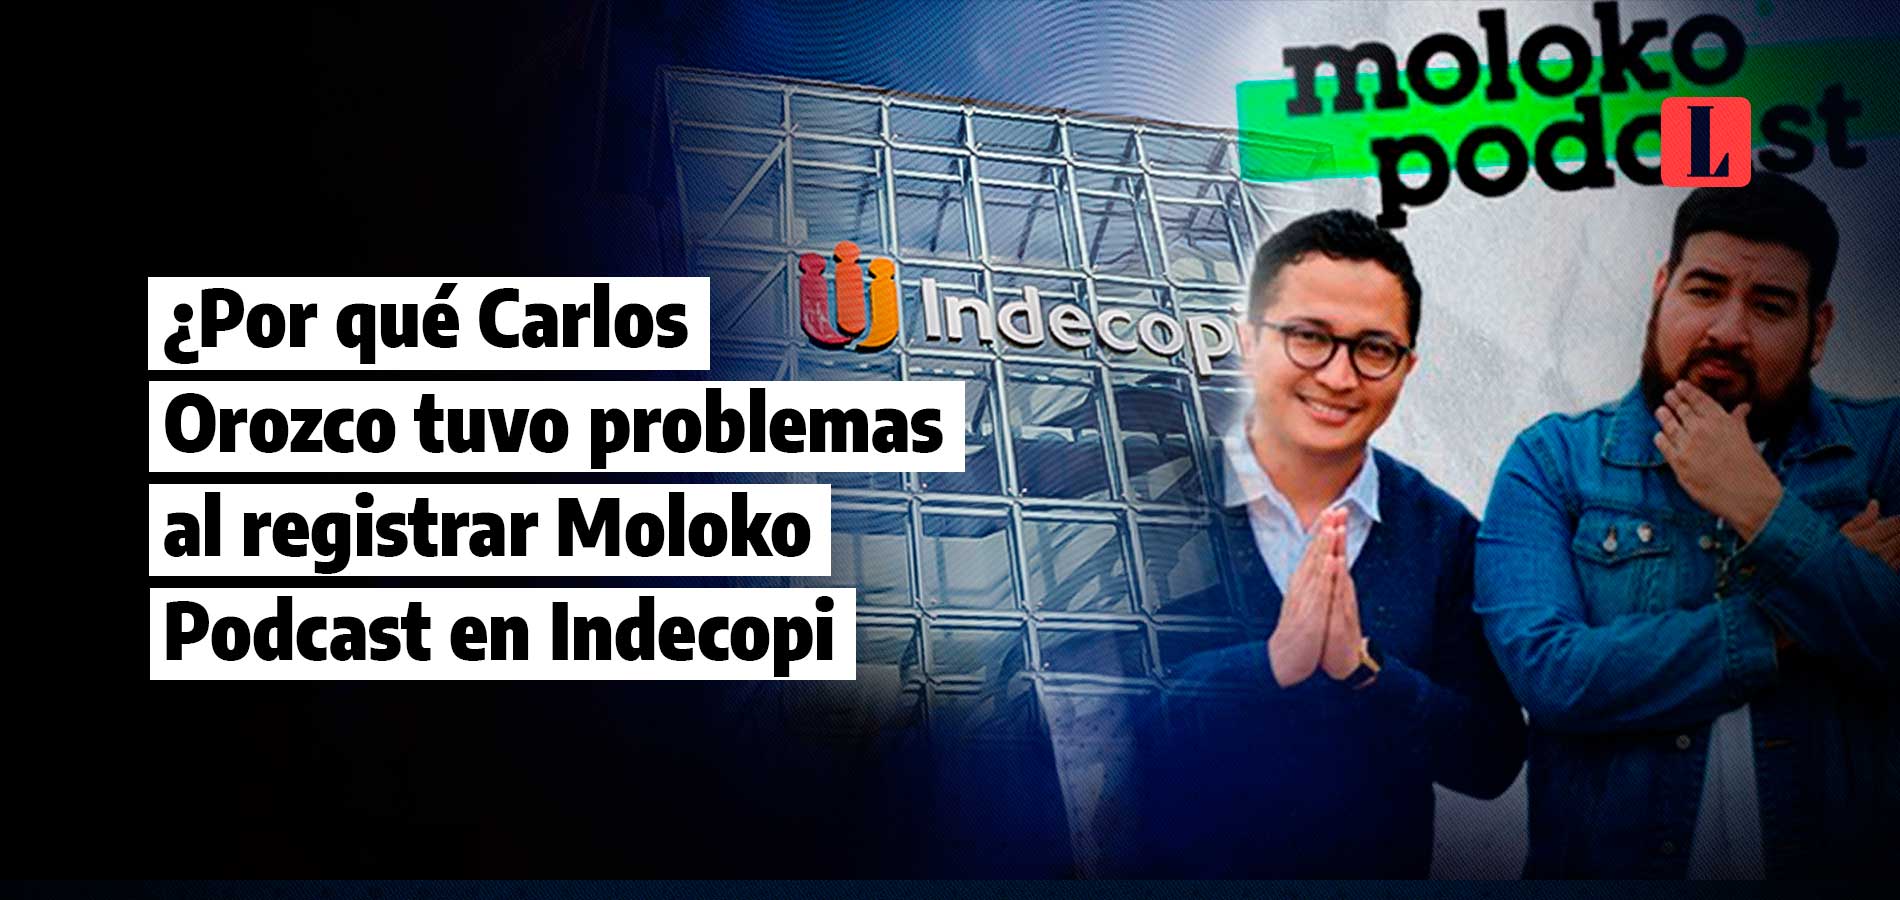 ¿Por qué Carlos Orozco tuvo problemas al registrar Moloko Podcast en Indecopi?